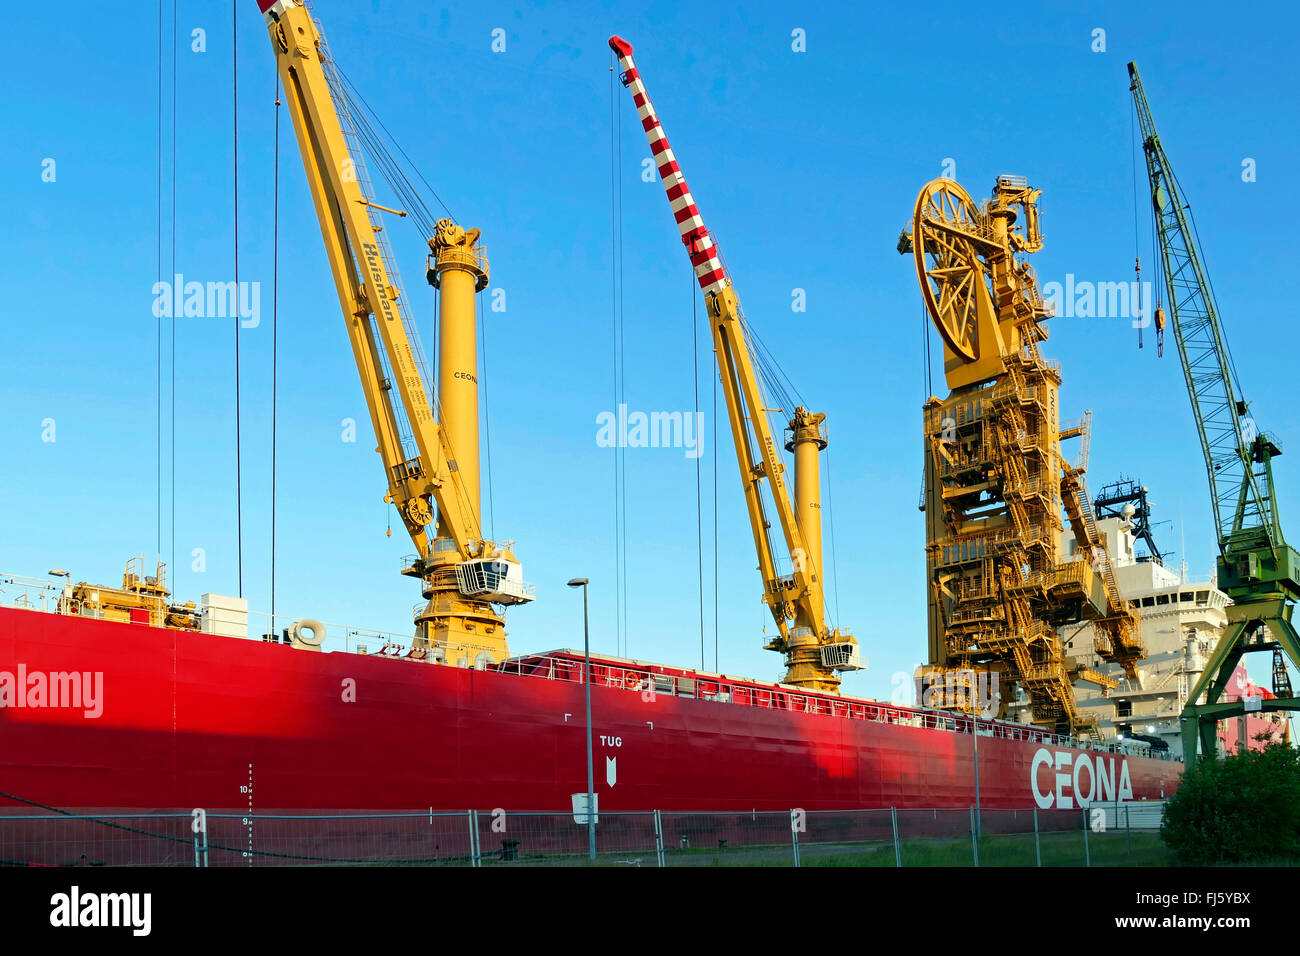 Detail der Bauphase Schiff Ceona Amazon, Deutschland, Bremerhaven  Stockfotografie - Alamy